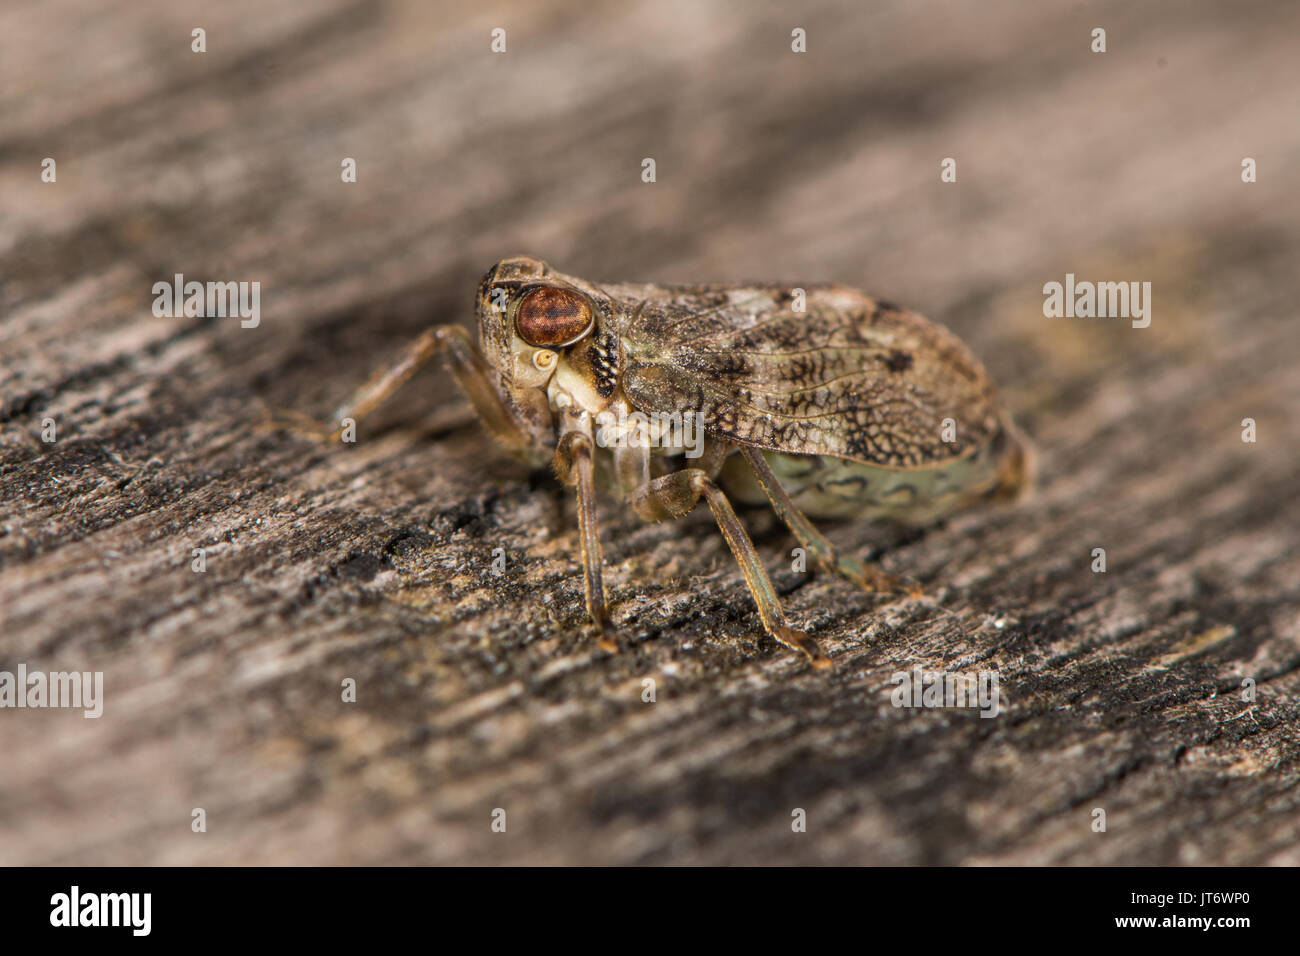 Issus coleoptratus planthopper Bug. Britische Insekt in der Reihenfolge Hemiptera, Familie Issidae, mit der großen Zahl von Venen auf Flügeln Stockfoto